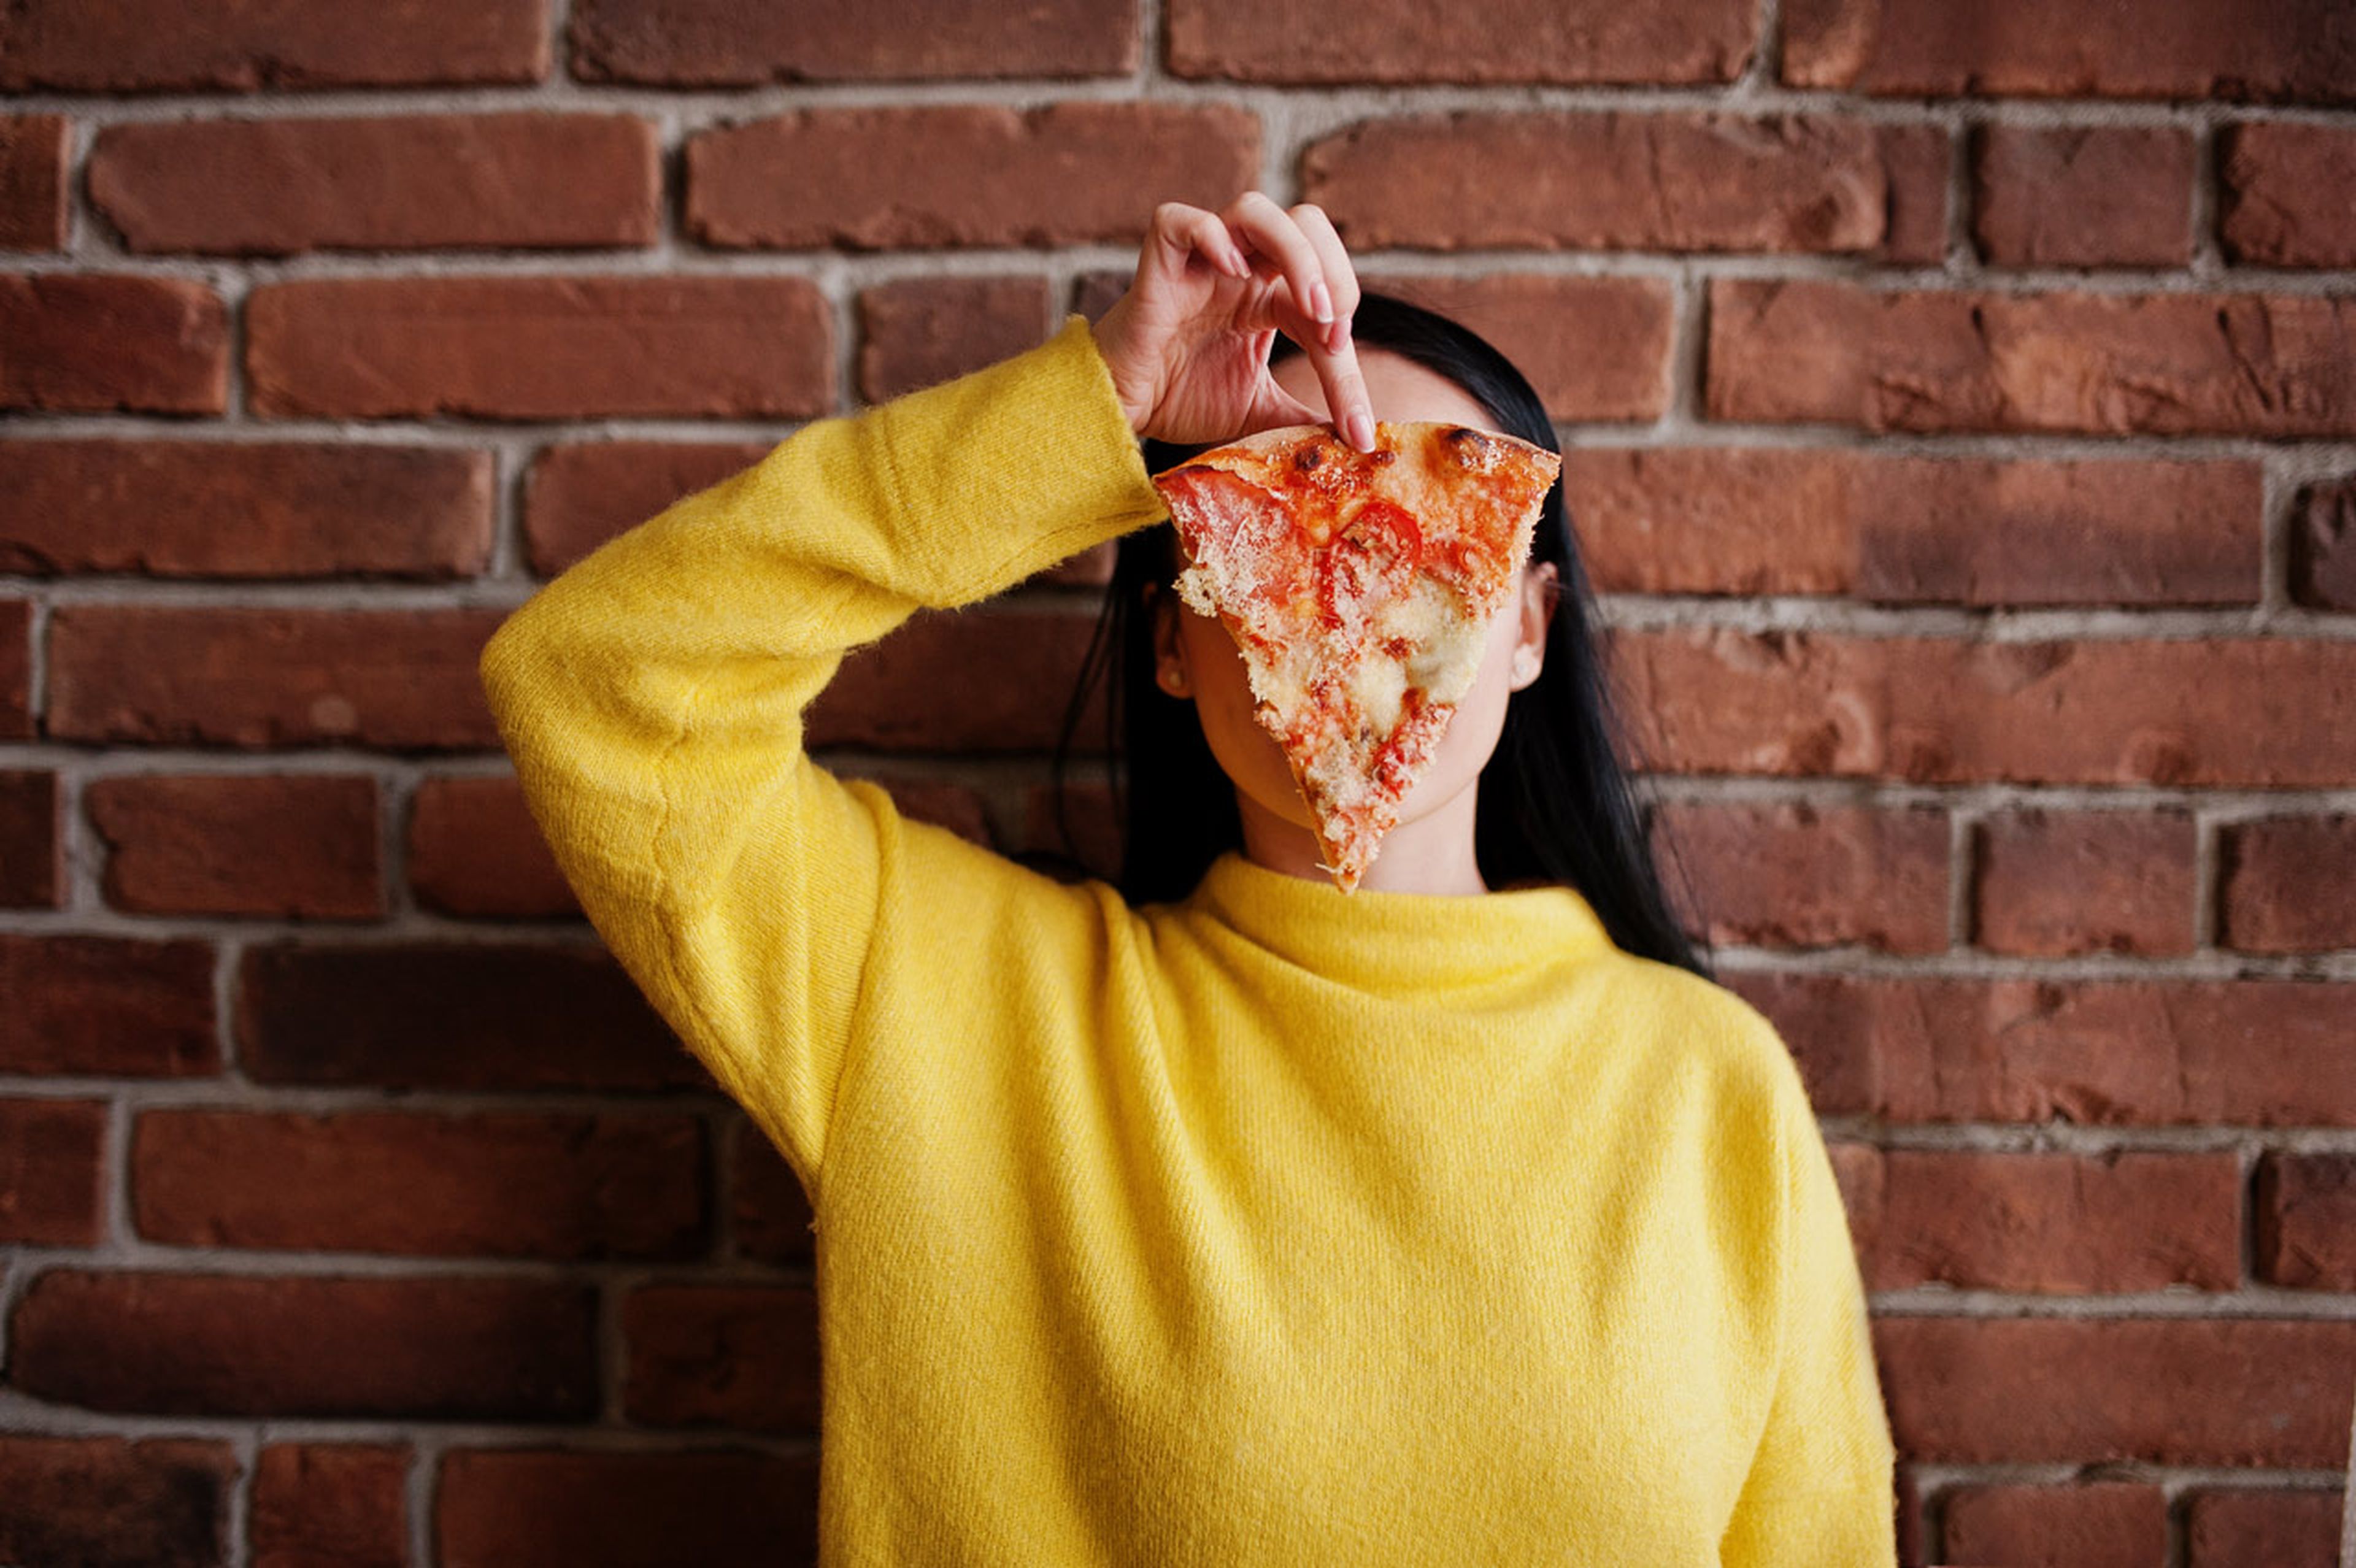 Una chica comiendo pizza